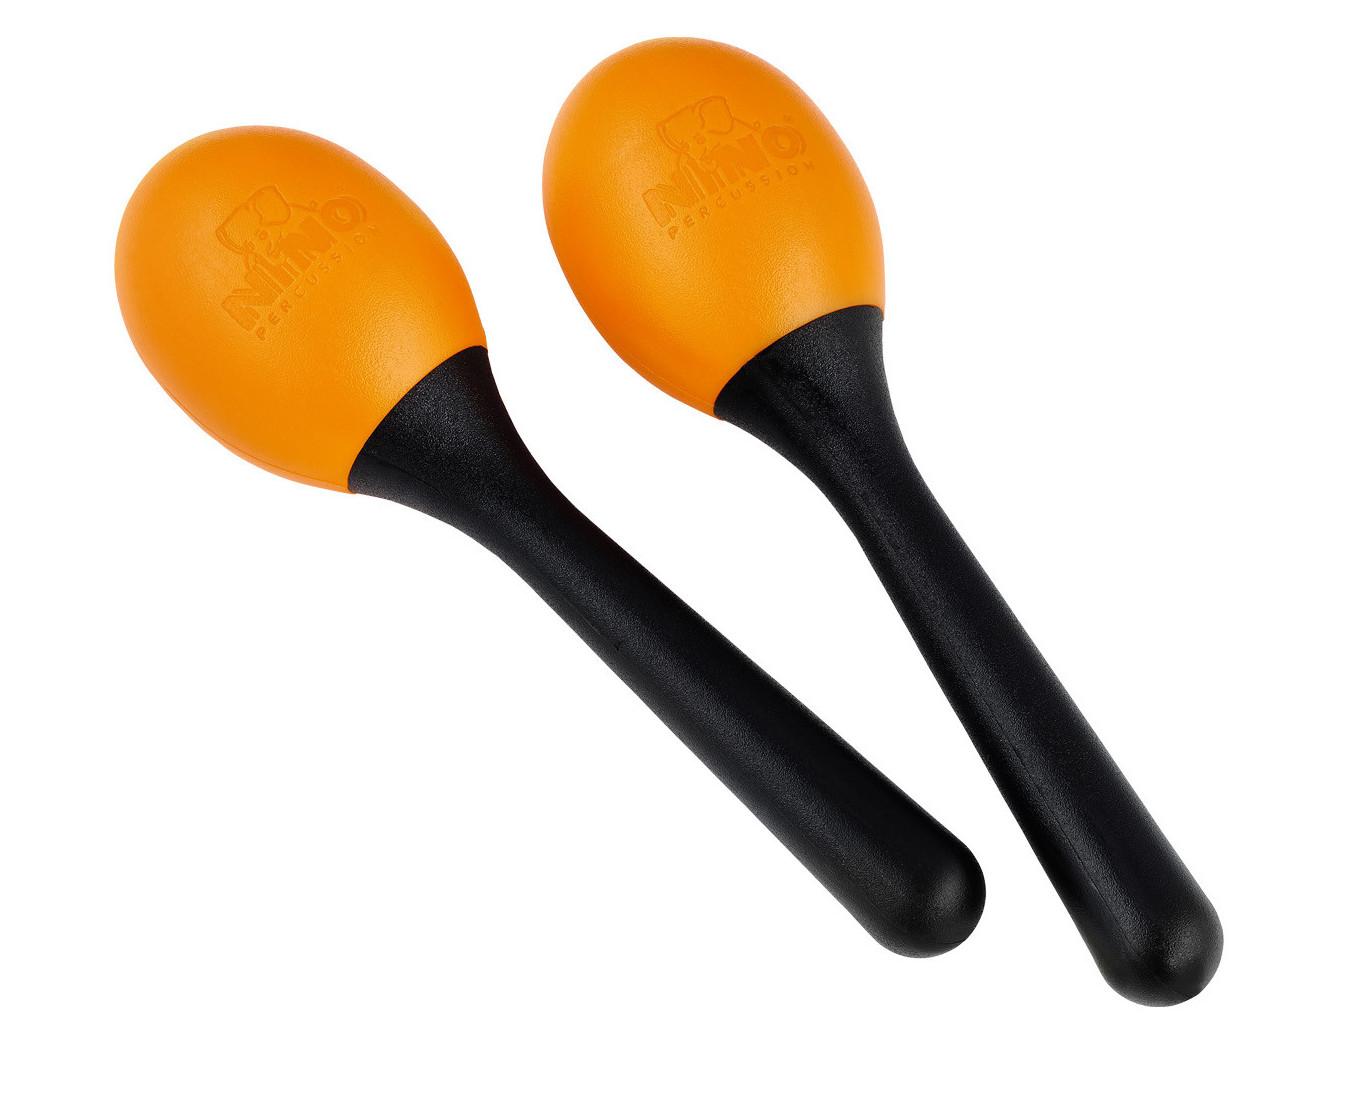 NINO Percussion NINO569OR Orange - Para Plastikowych marakasów w kształcie jajka z uchwytem w kolorze pomarańczowym